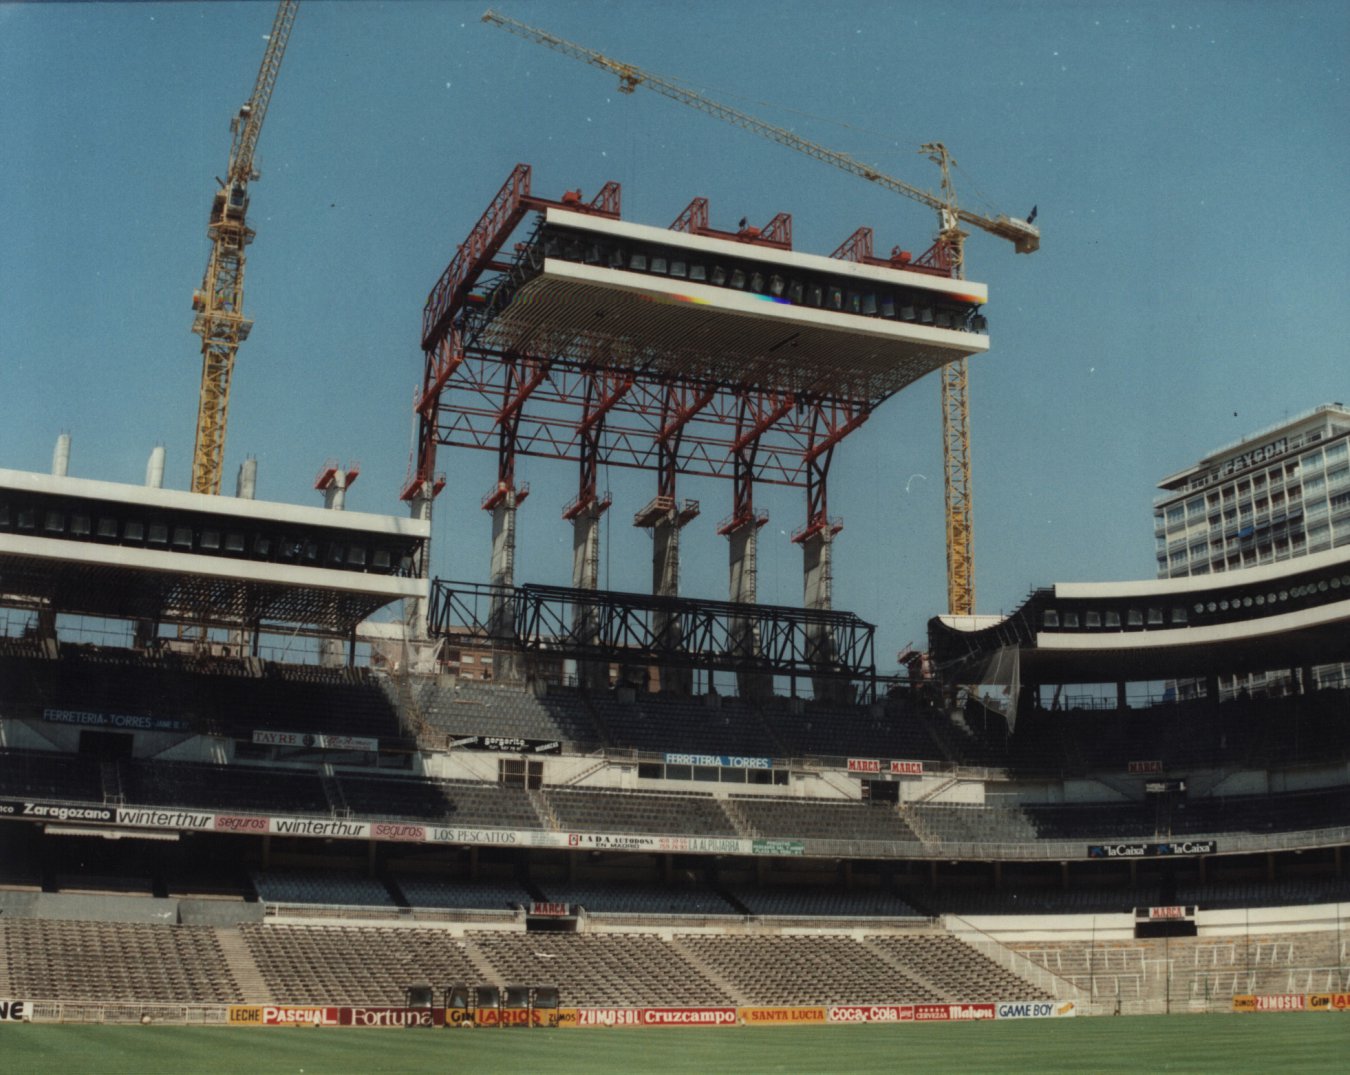 Durante los primeros años de los noventa el estadio sufrió varias ampliaciones de las tribunas bajas y altas hasta llegar a los 106.000 espectadores, para compensar la pérdida de capacidad exigida para el Mundial de 1982.